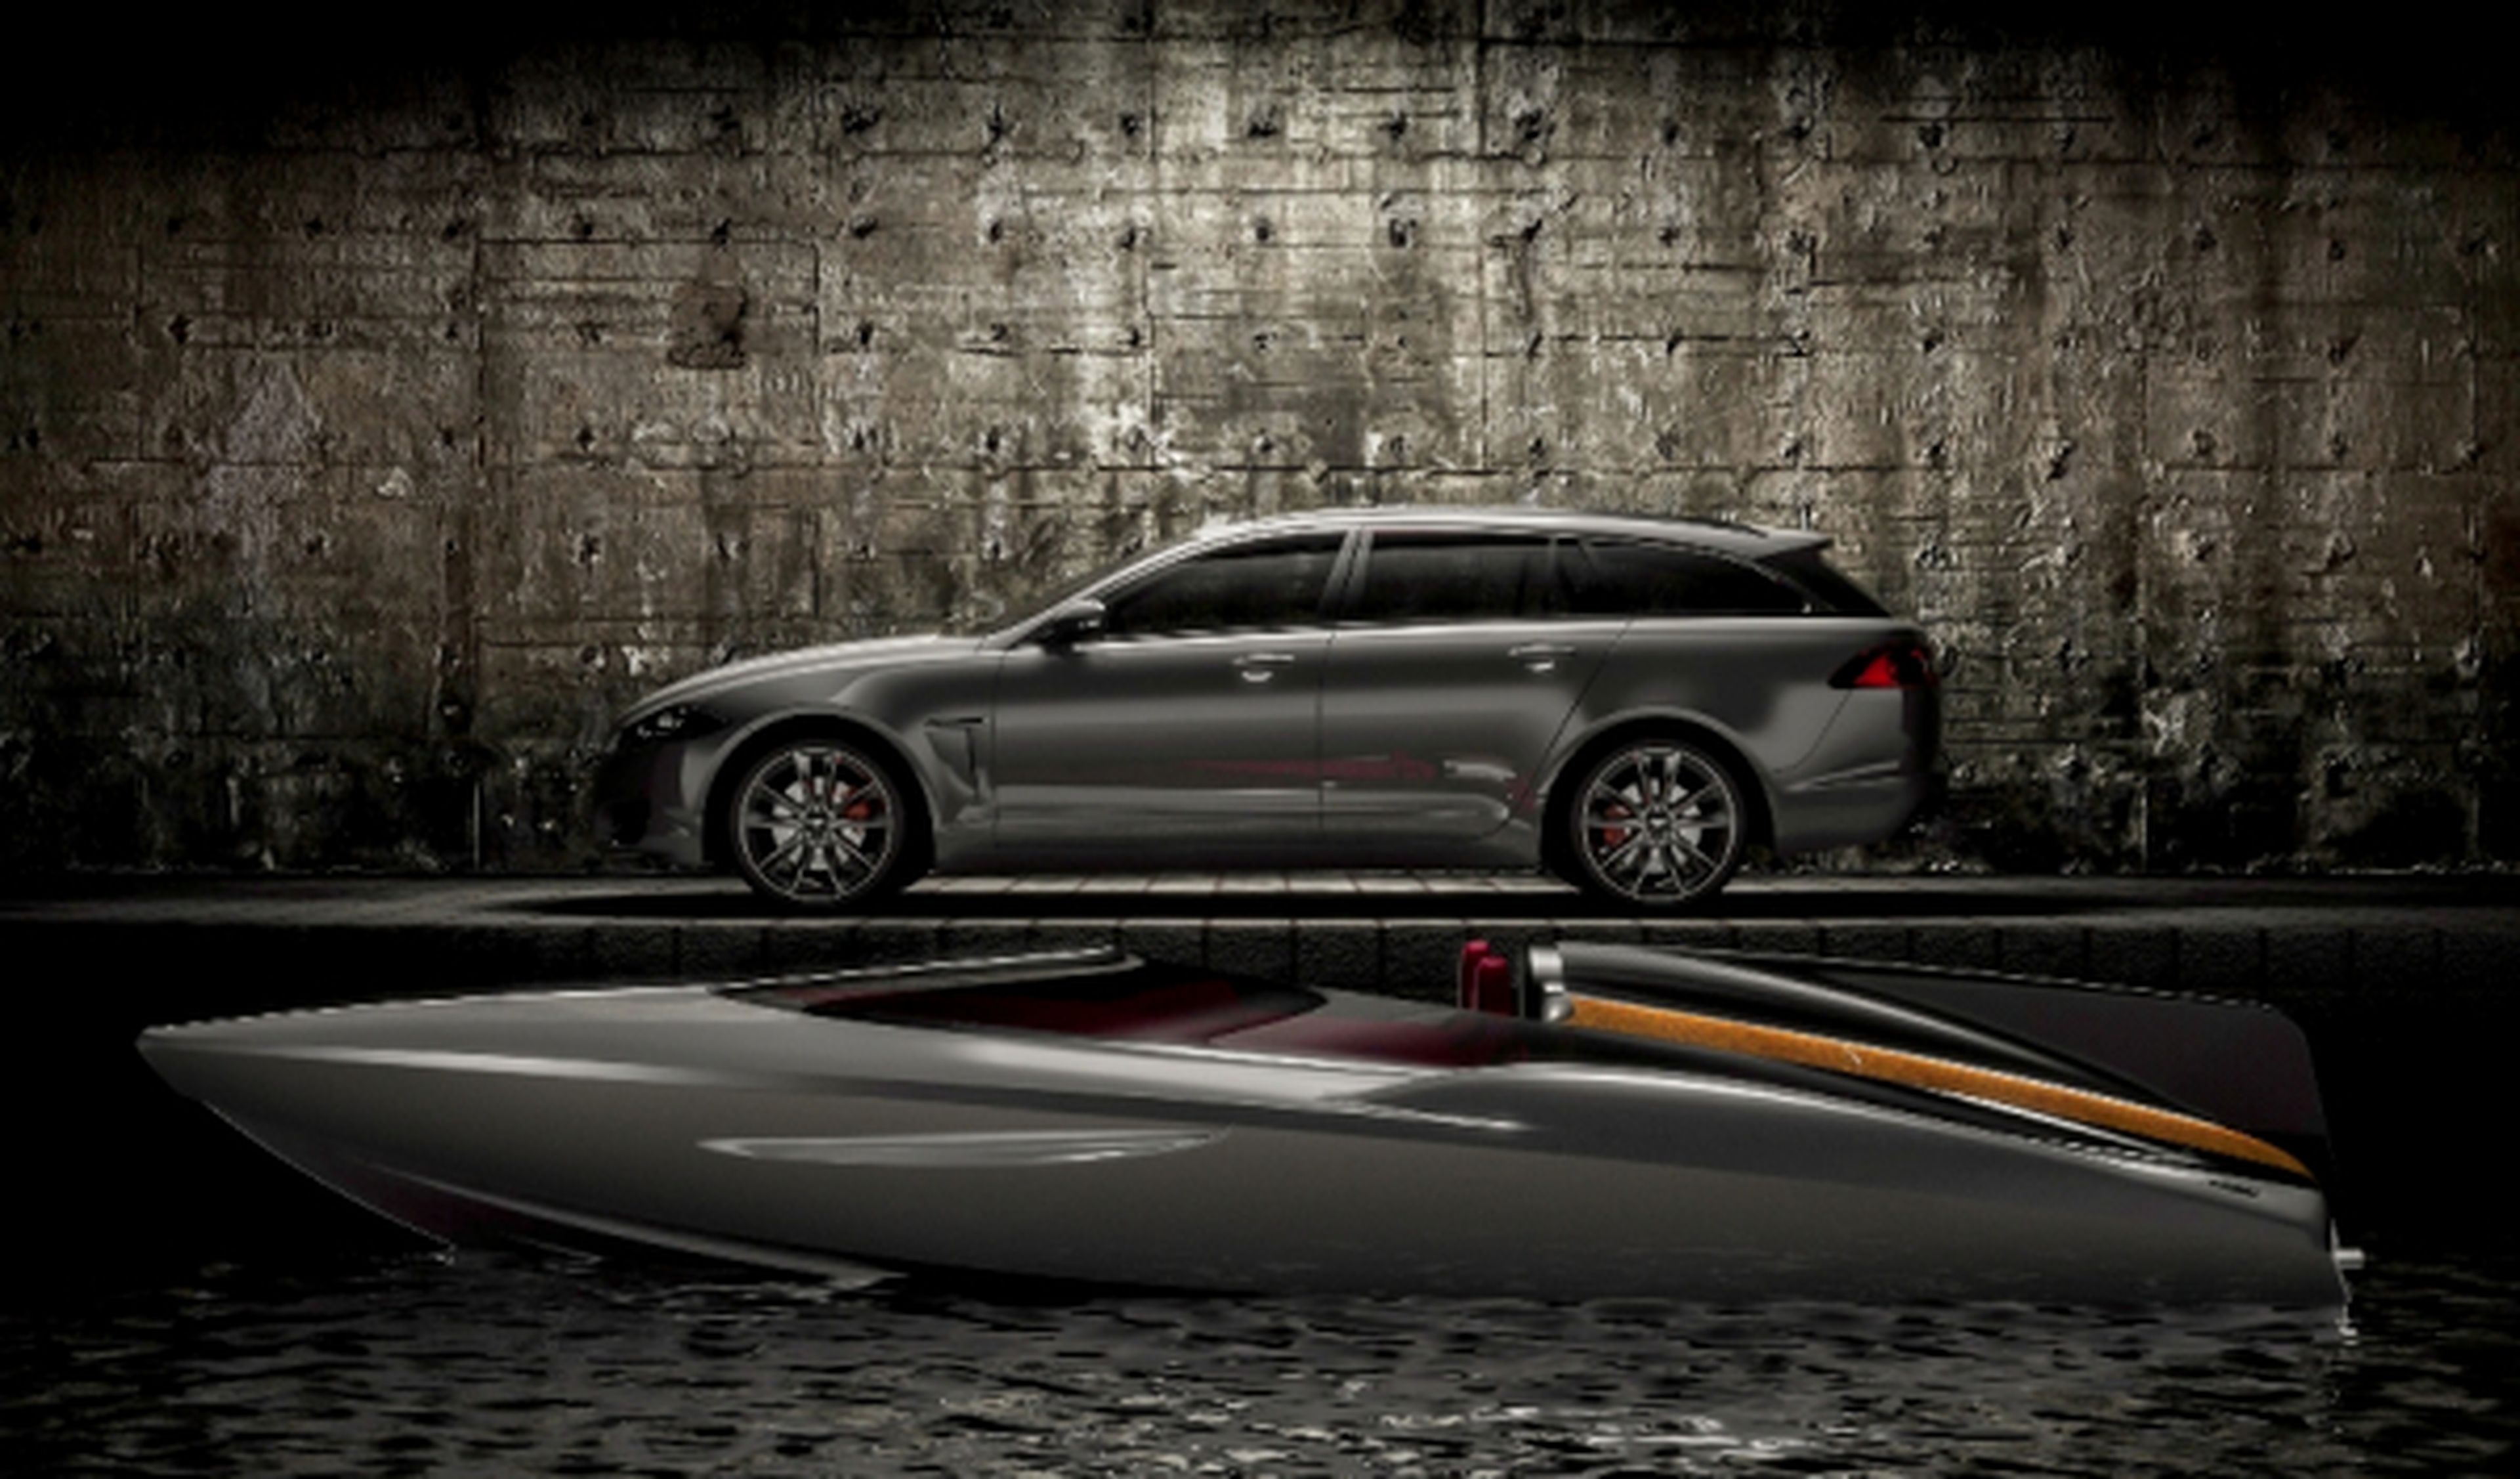 Jaguar Concept Speedboat